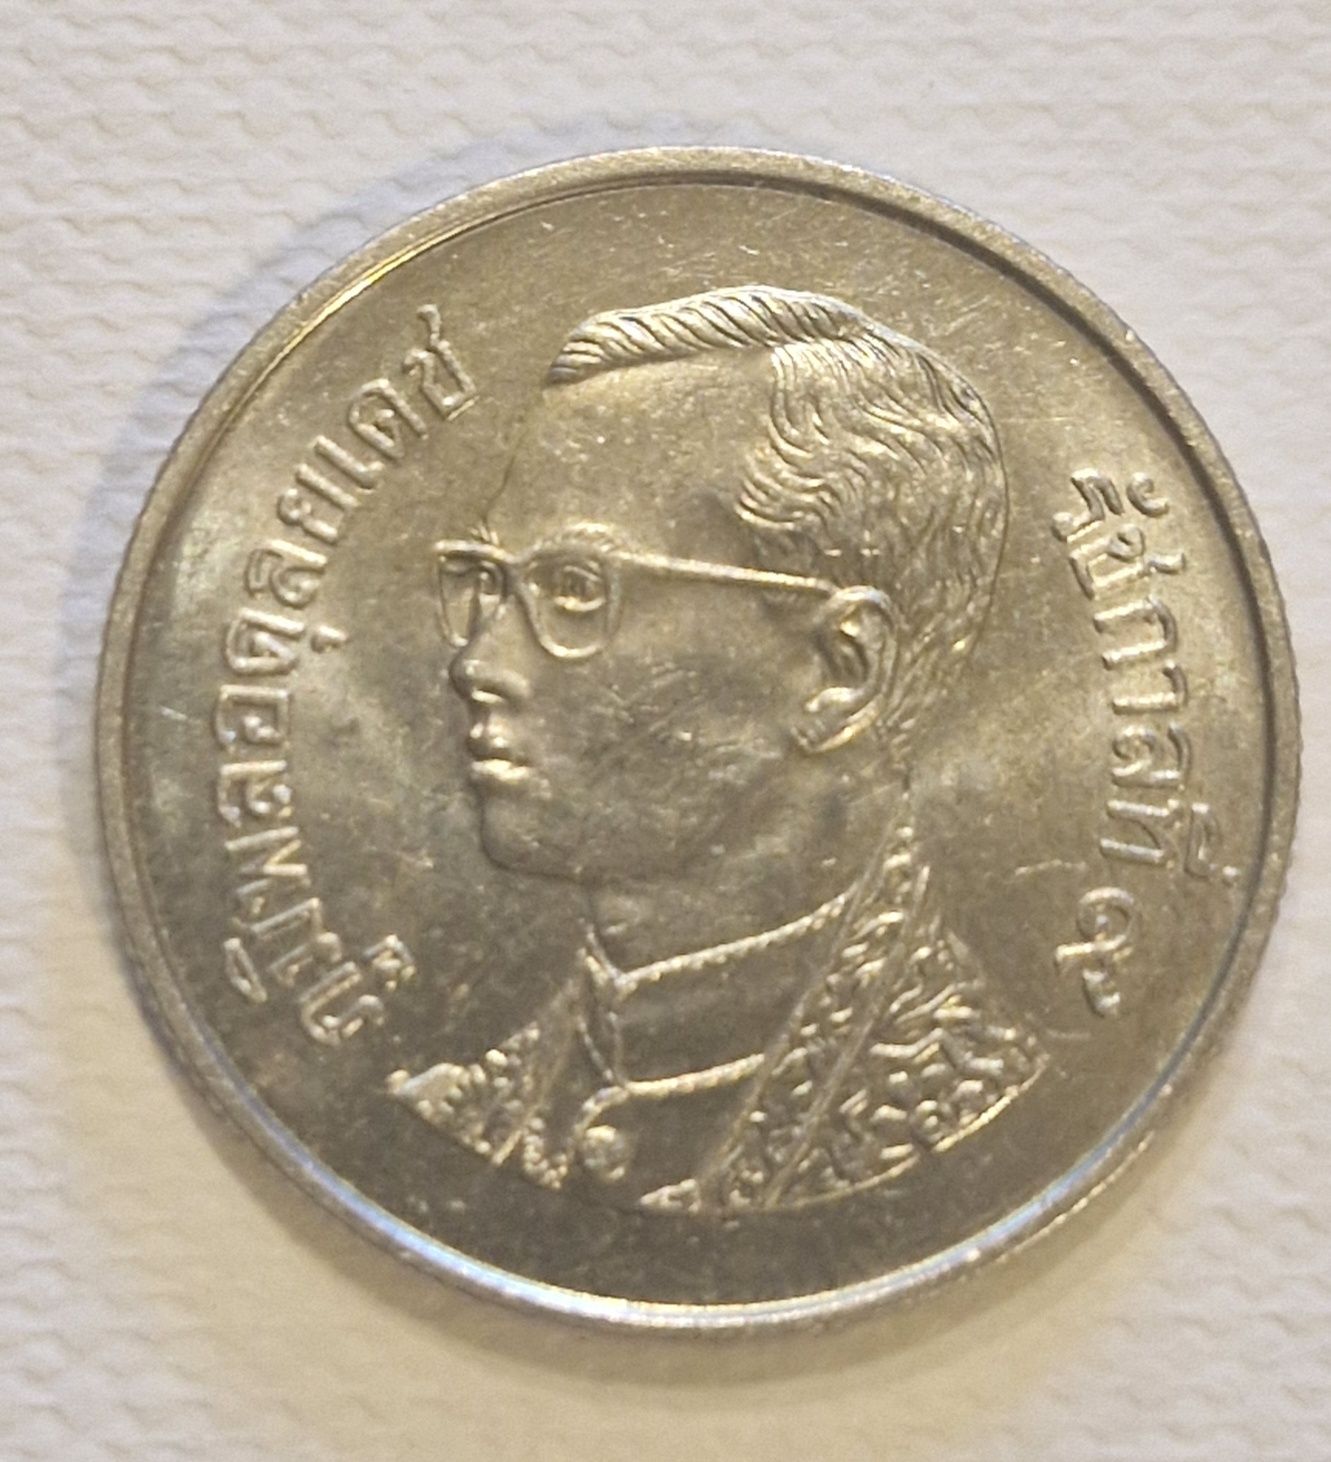 Moneta Tajlandia 1 baht.